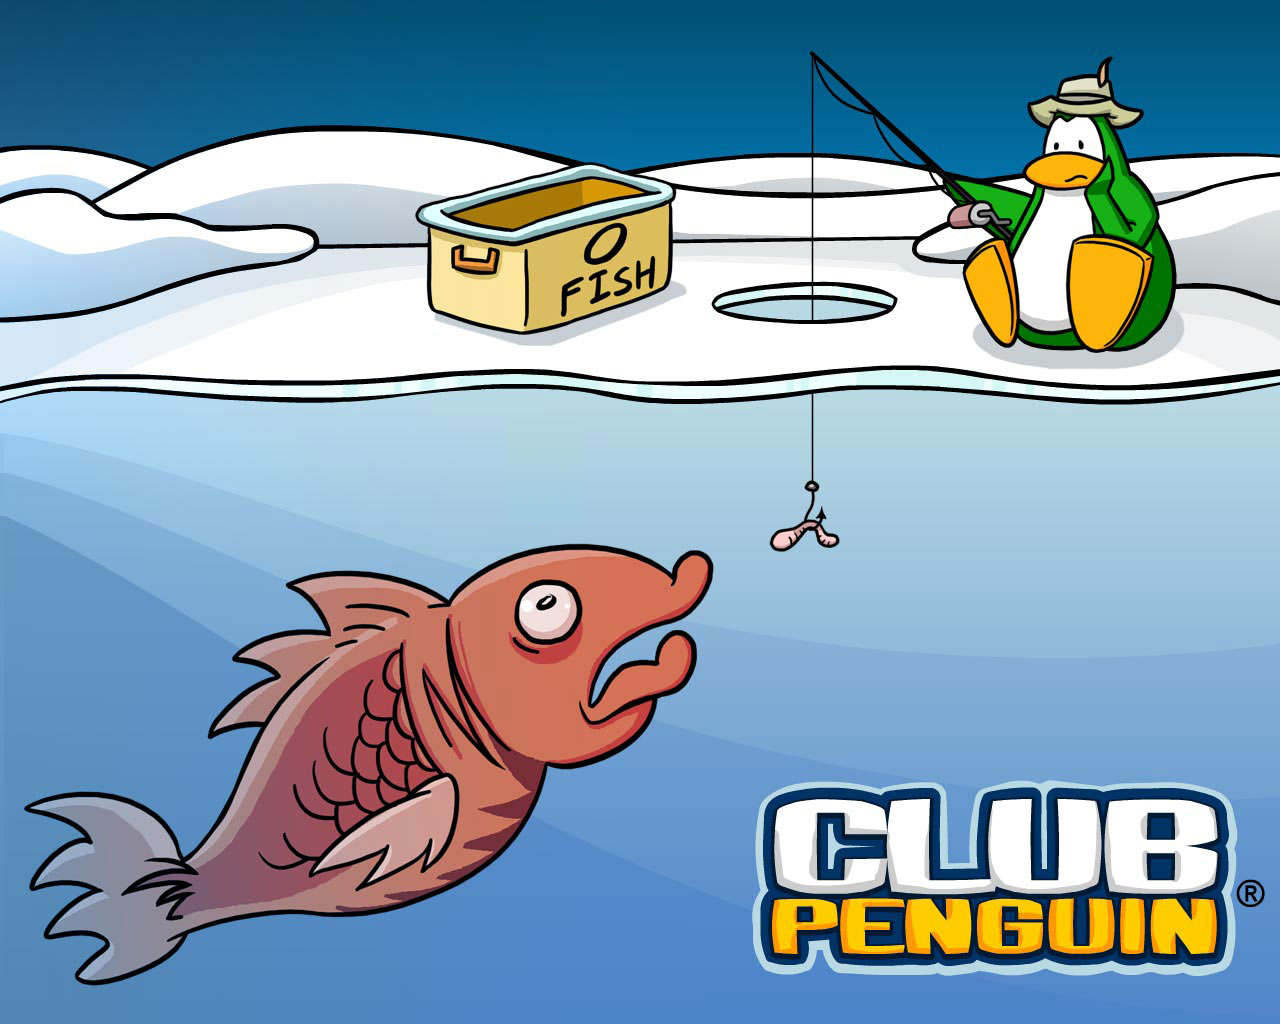 Club Penguin   Club Penguin Wallpaper 34431721